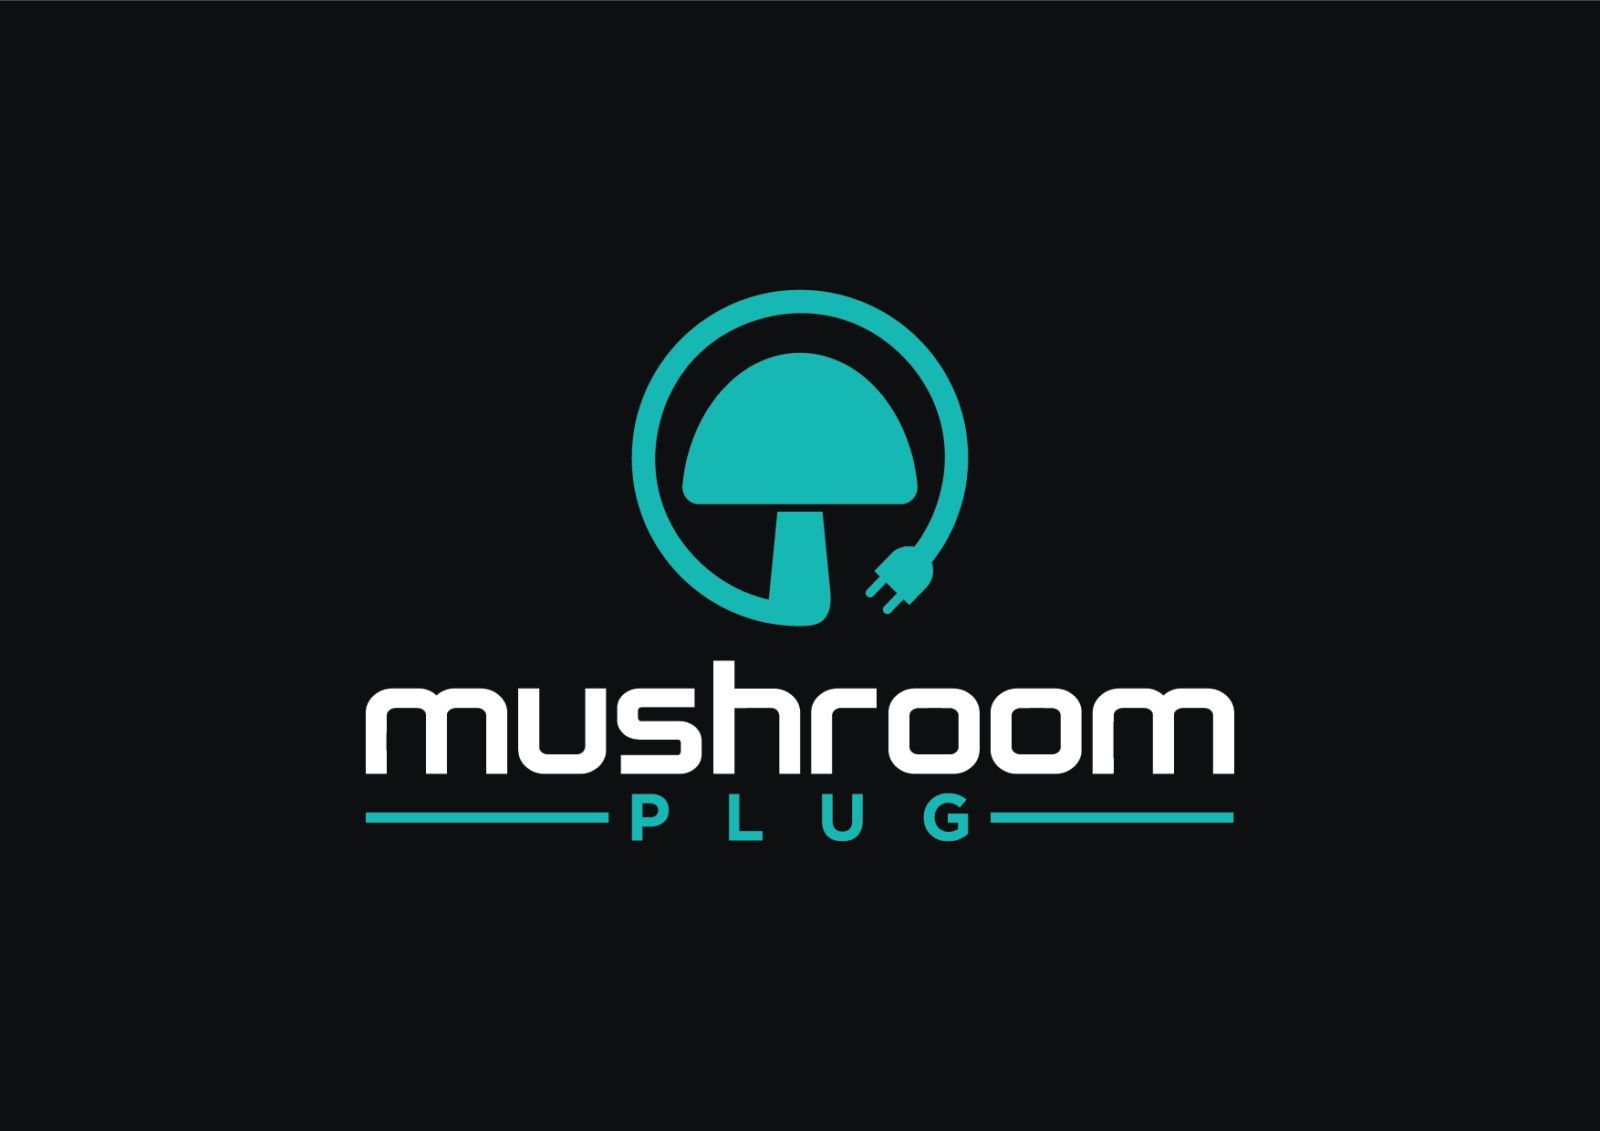 mushroomplug.com